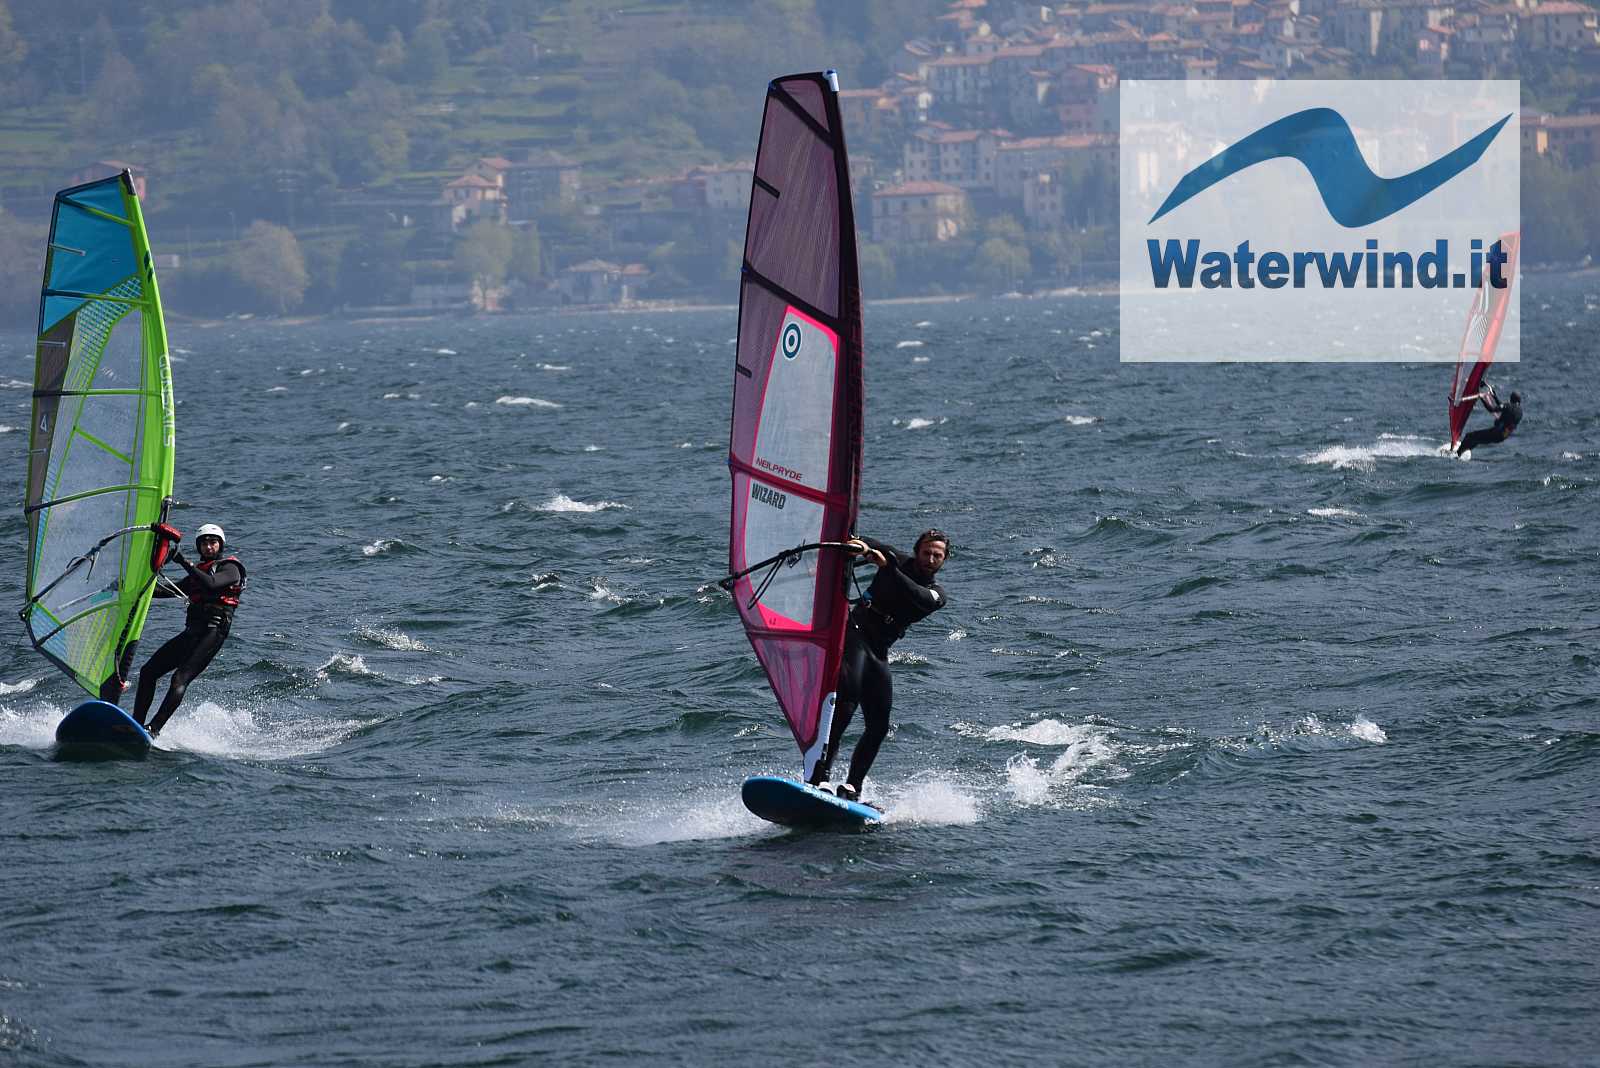 Pianello del Lario (Lake Como), 13 April 2019